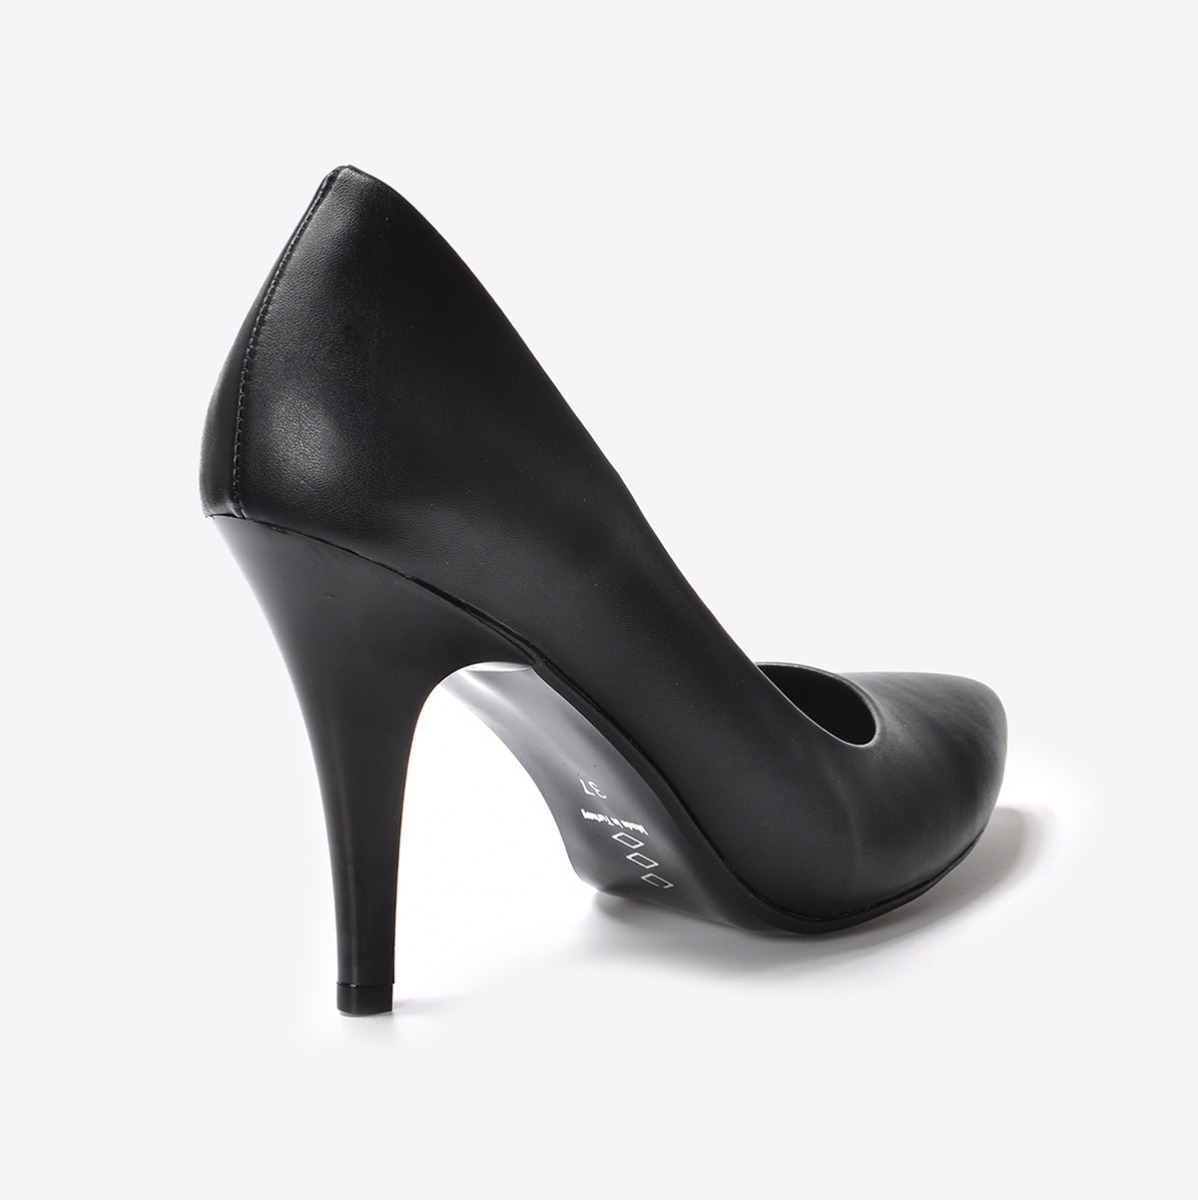 Flo Kadın Siyah Klasik Topuklu Ayakkabı VZN20-170Y. 5